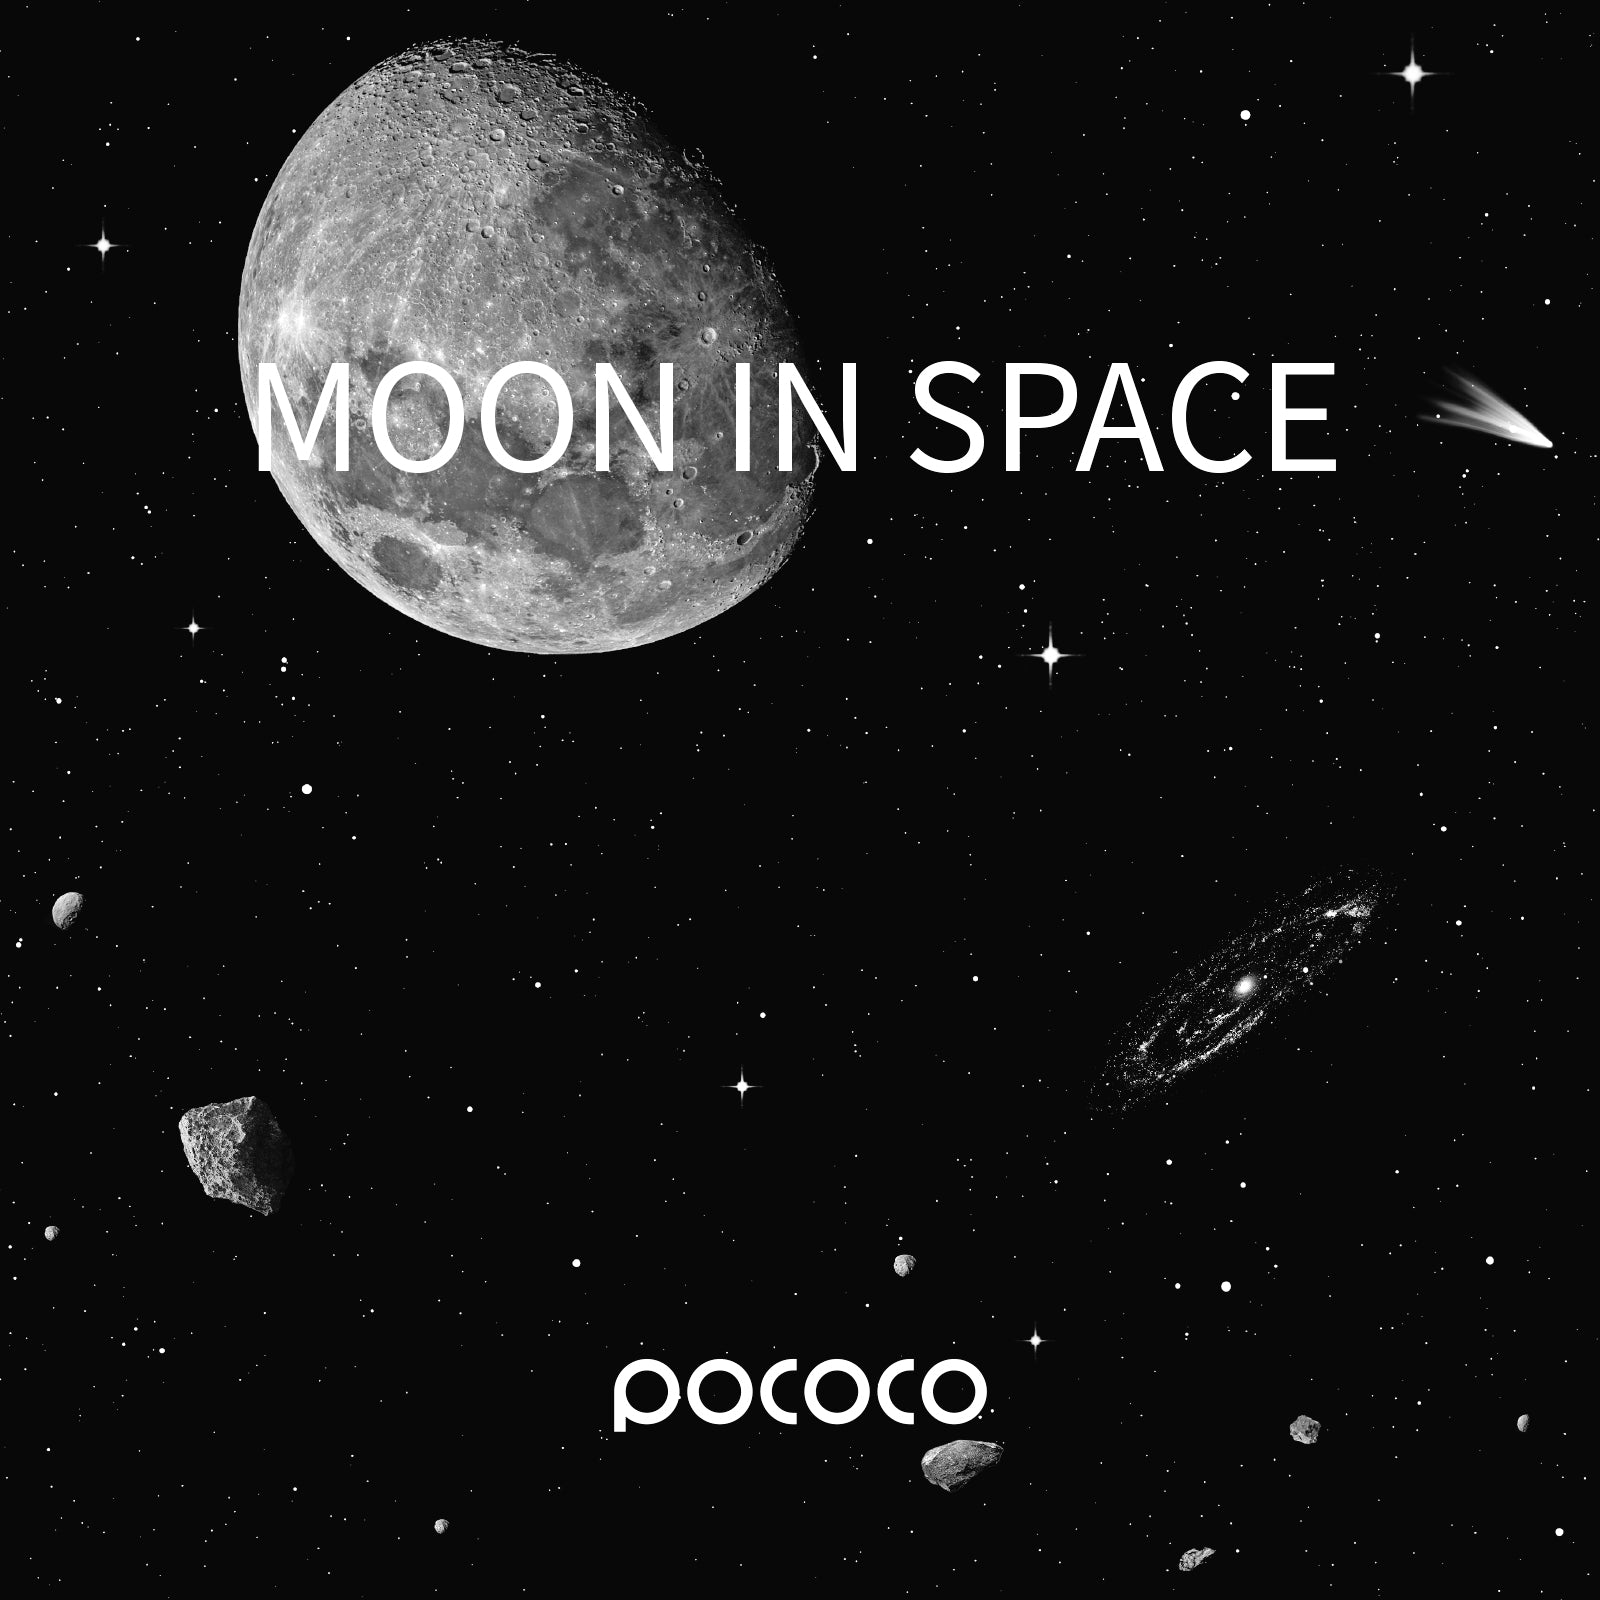 Moon in Space - Pococo Galaxy Projector Discs